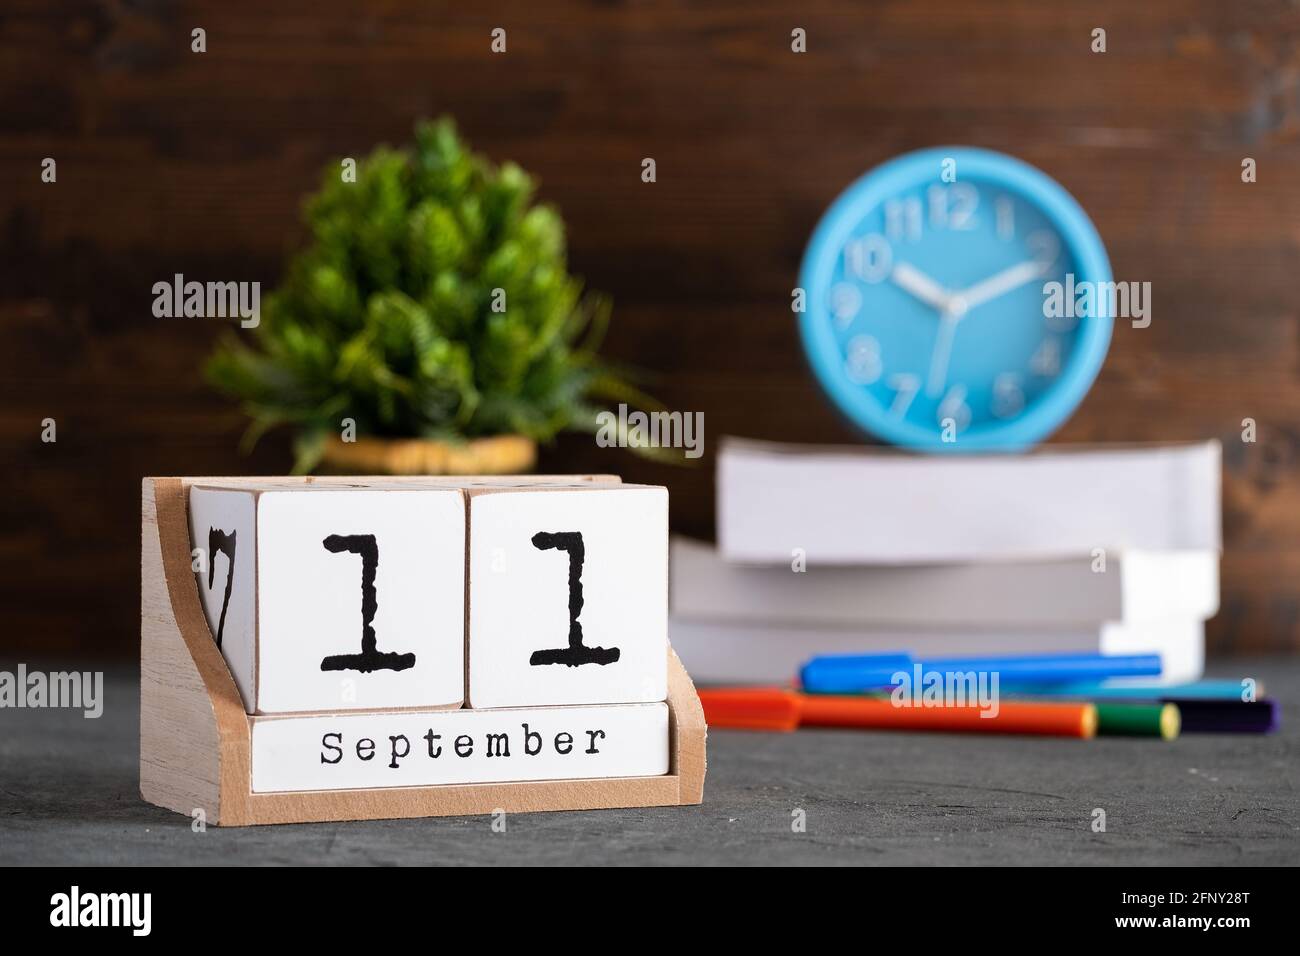 11 septembre. Septembre 11 calendrier cube en bois avec des objets flous sur fond. Banque D'Images